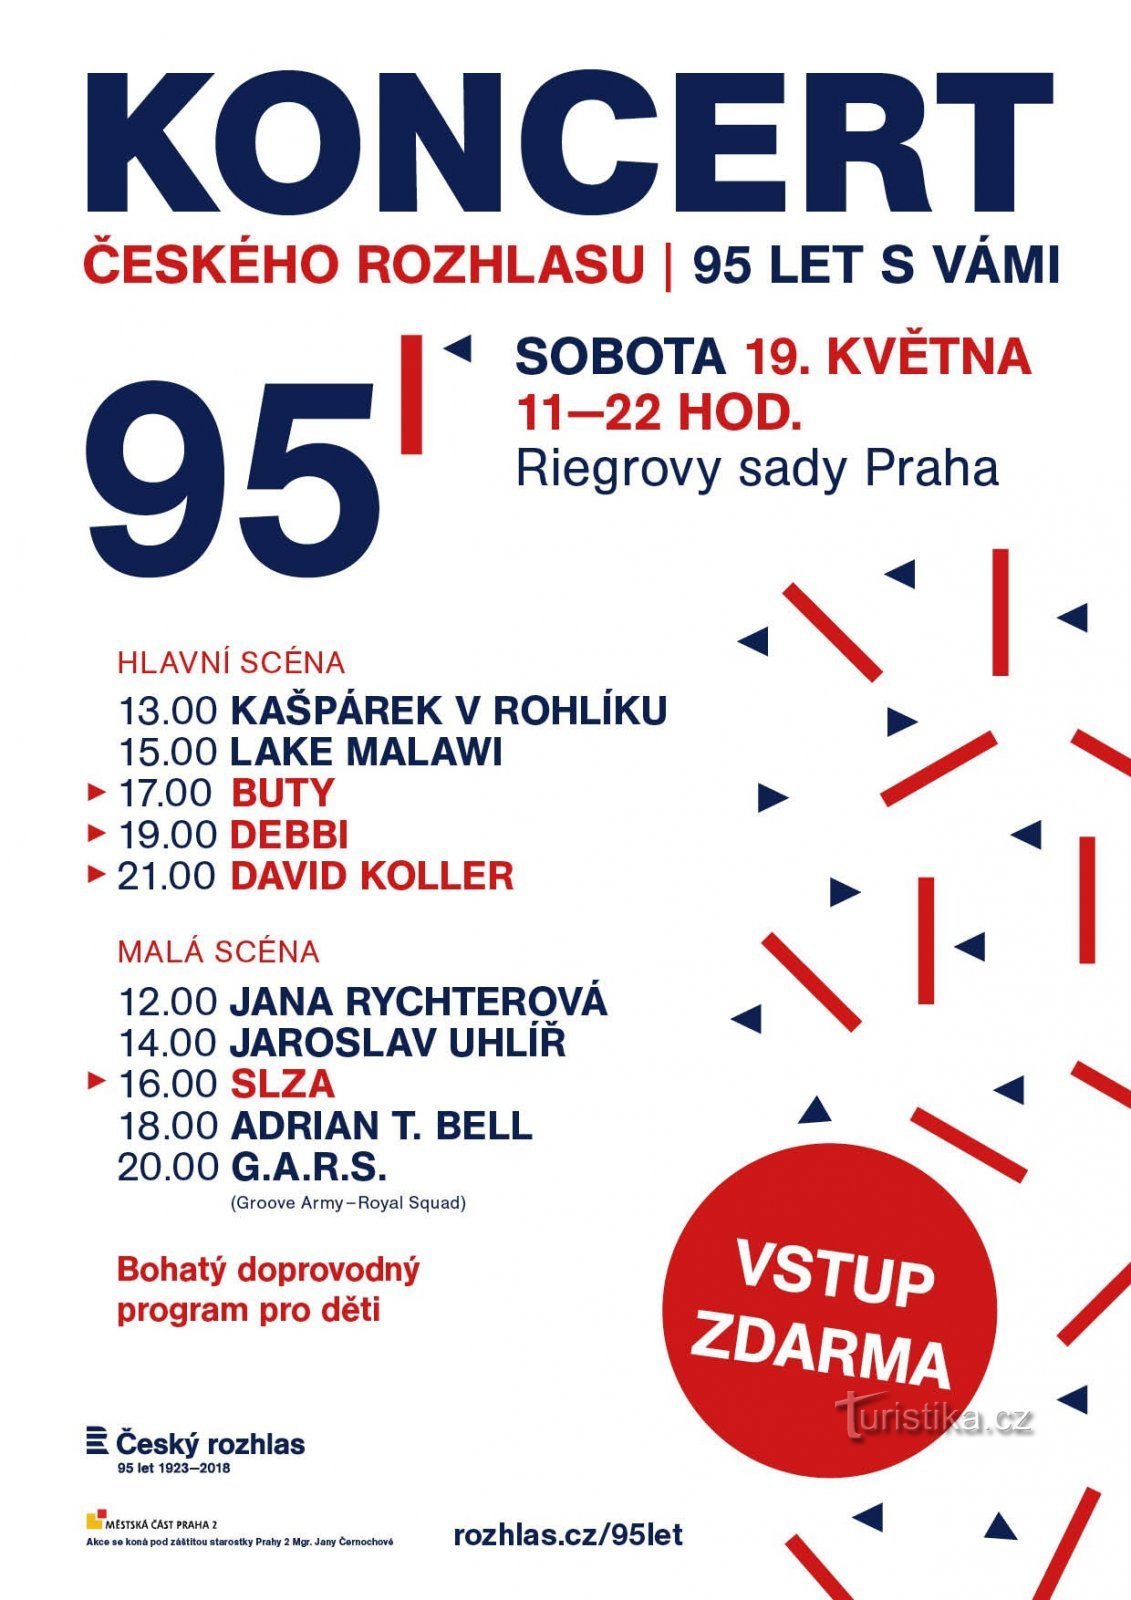 Češki radio bo praznoval 95 let, praznovanje bo doseglo vrhunec s koncertom v Riegrový sady